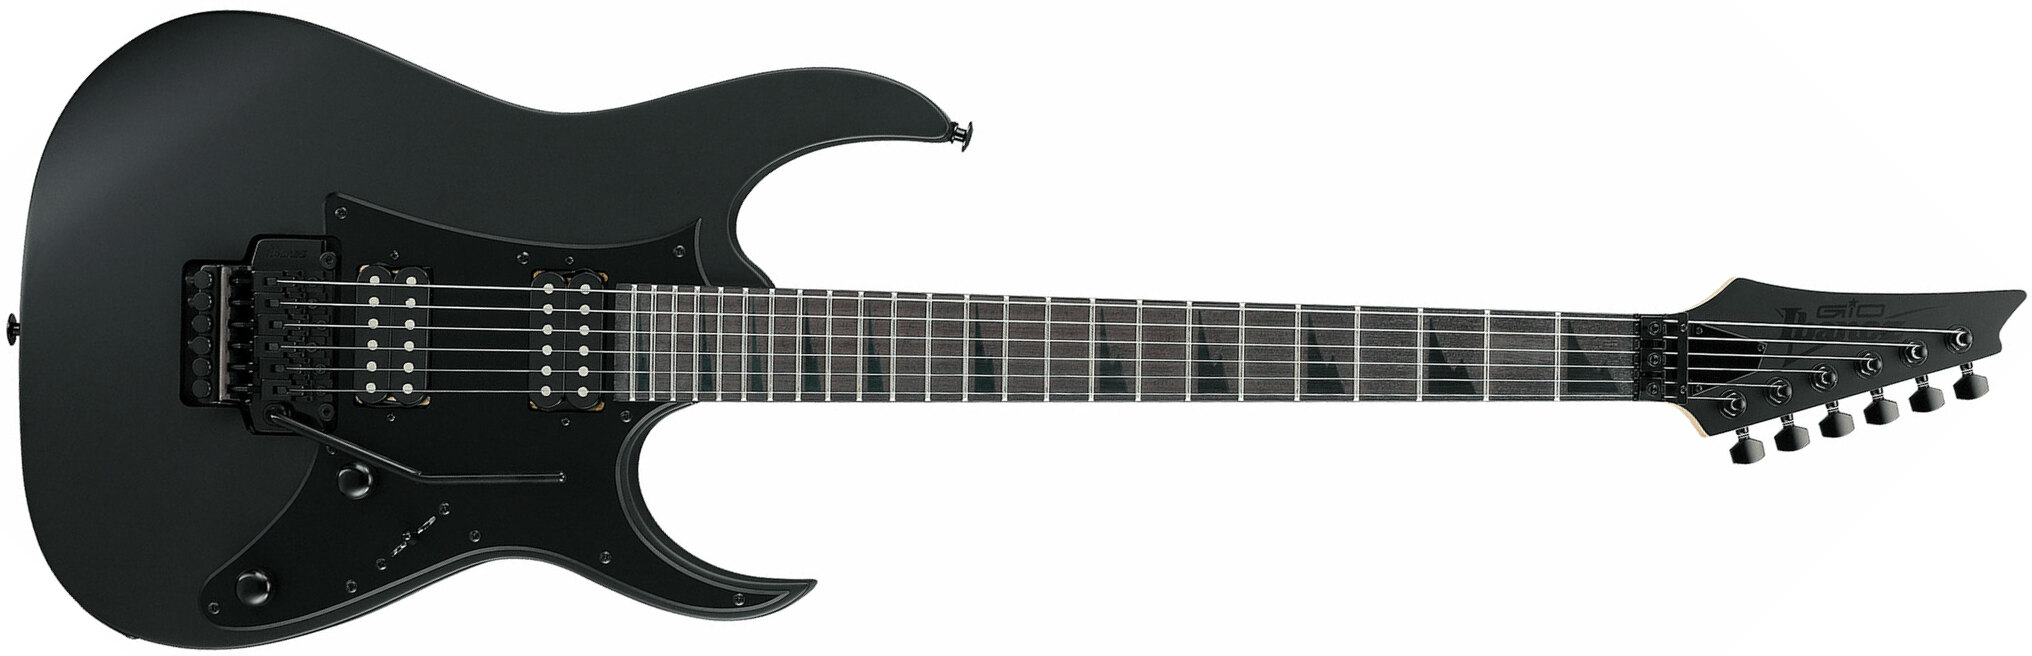 Ibanez Grgr330ex Bkf Gio 2h Fr Pur - Black Flat - Elektrische gitaar in Str-vorm - Main picture